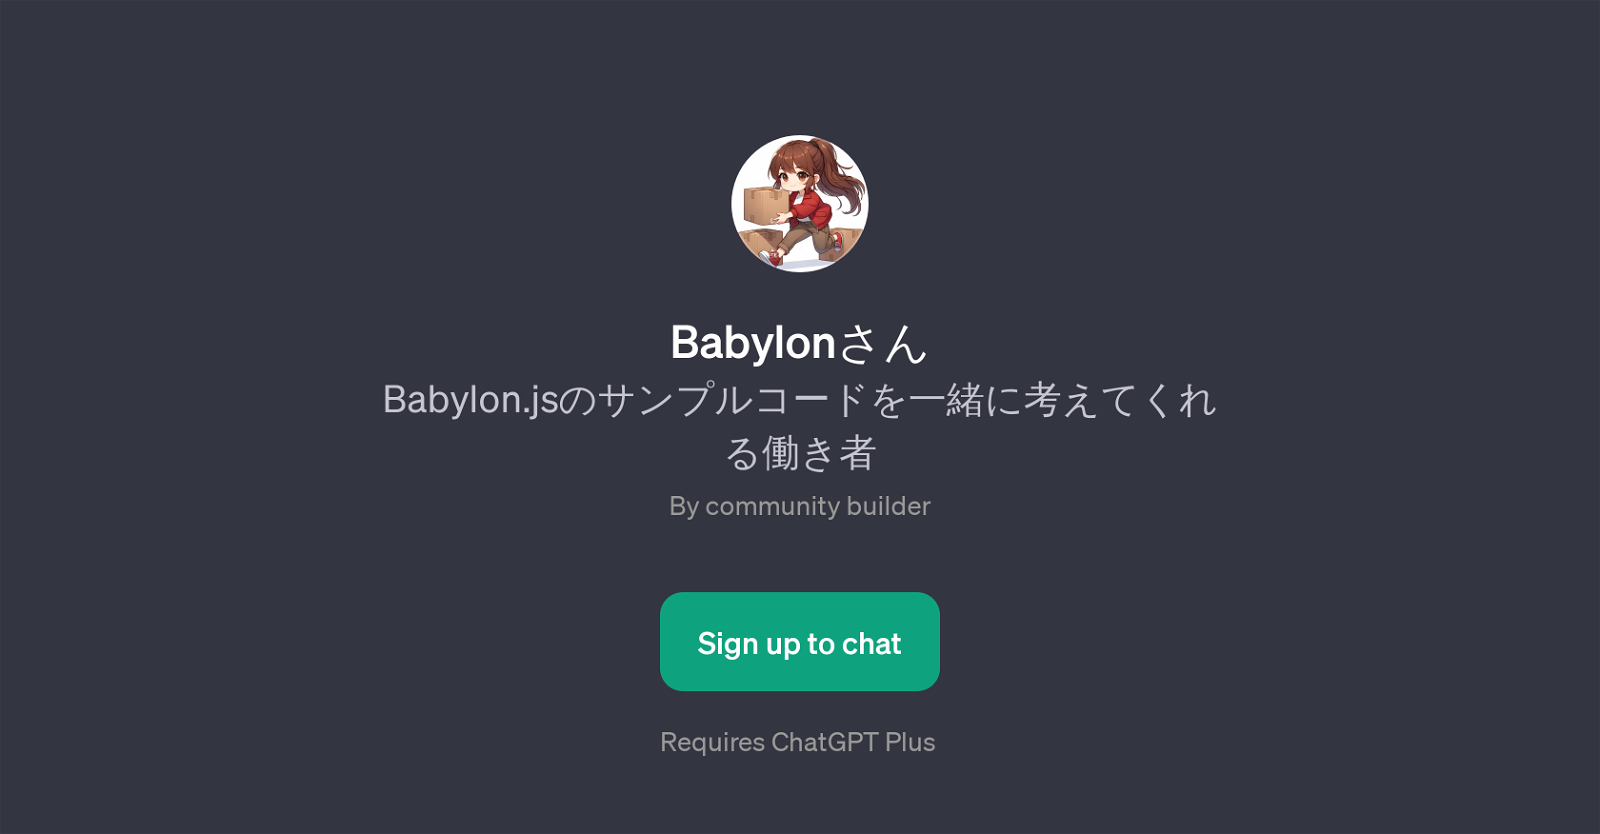 Babylon-san website